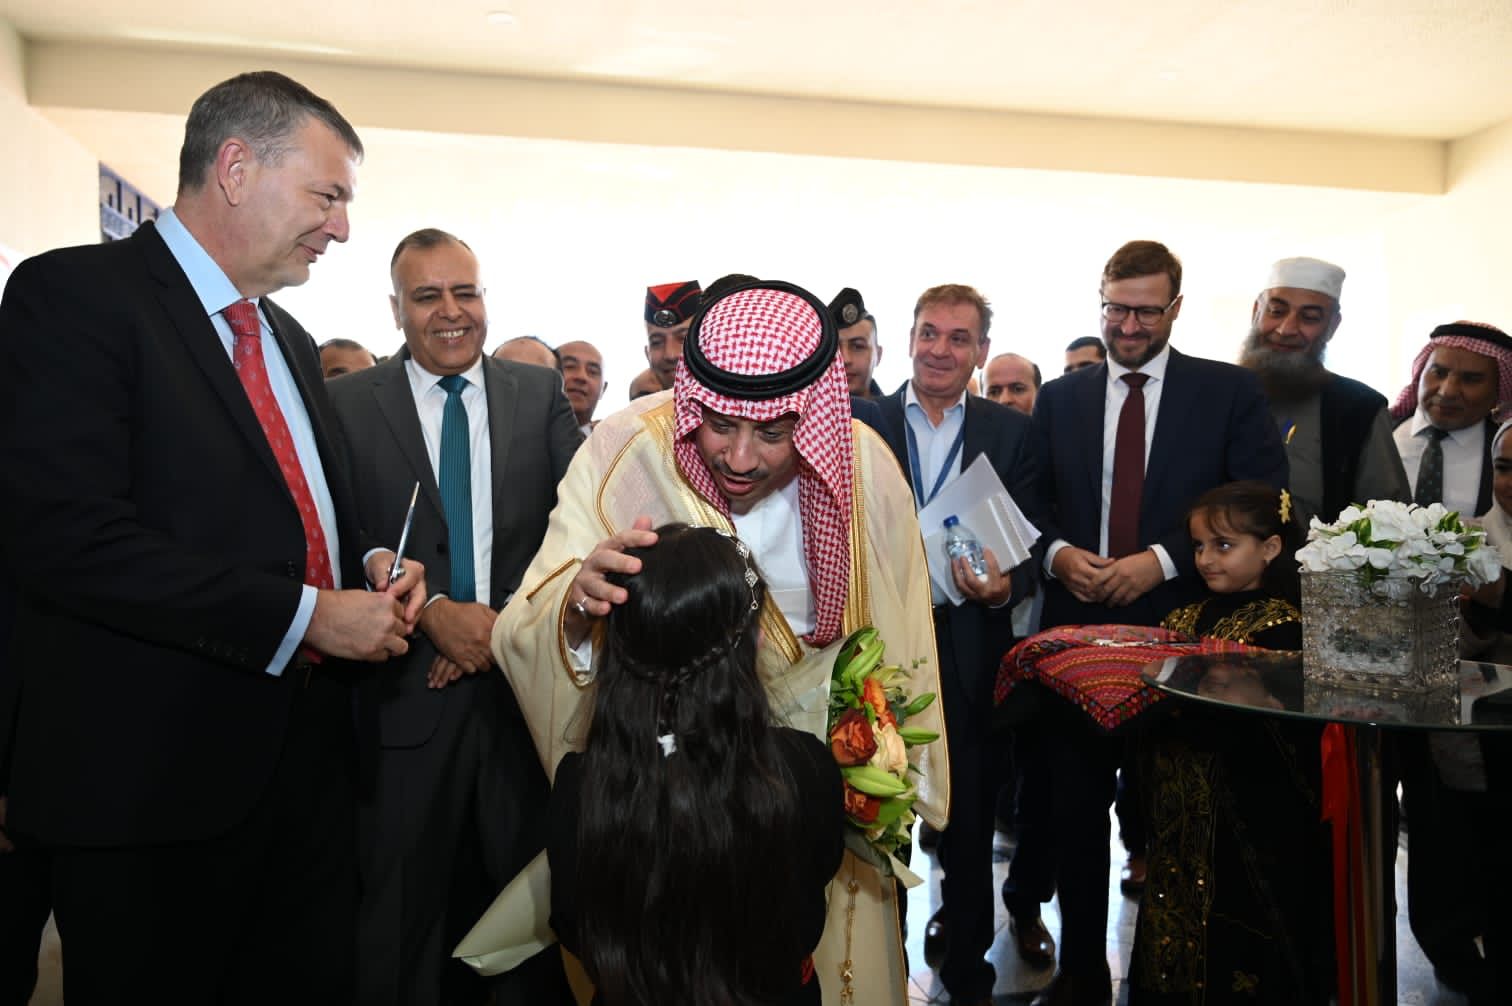  السفير السعودي يسلم الاونروا دعما من المملكة بـ 27 مليون دولار 